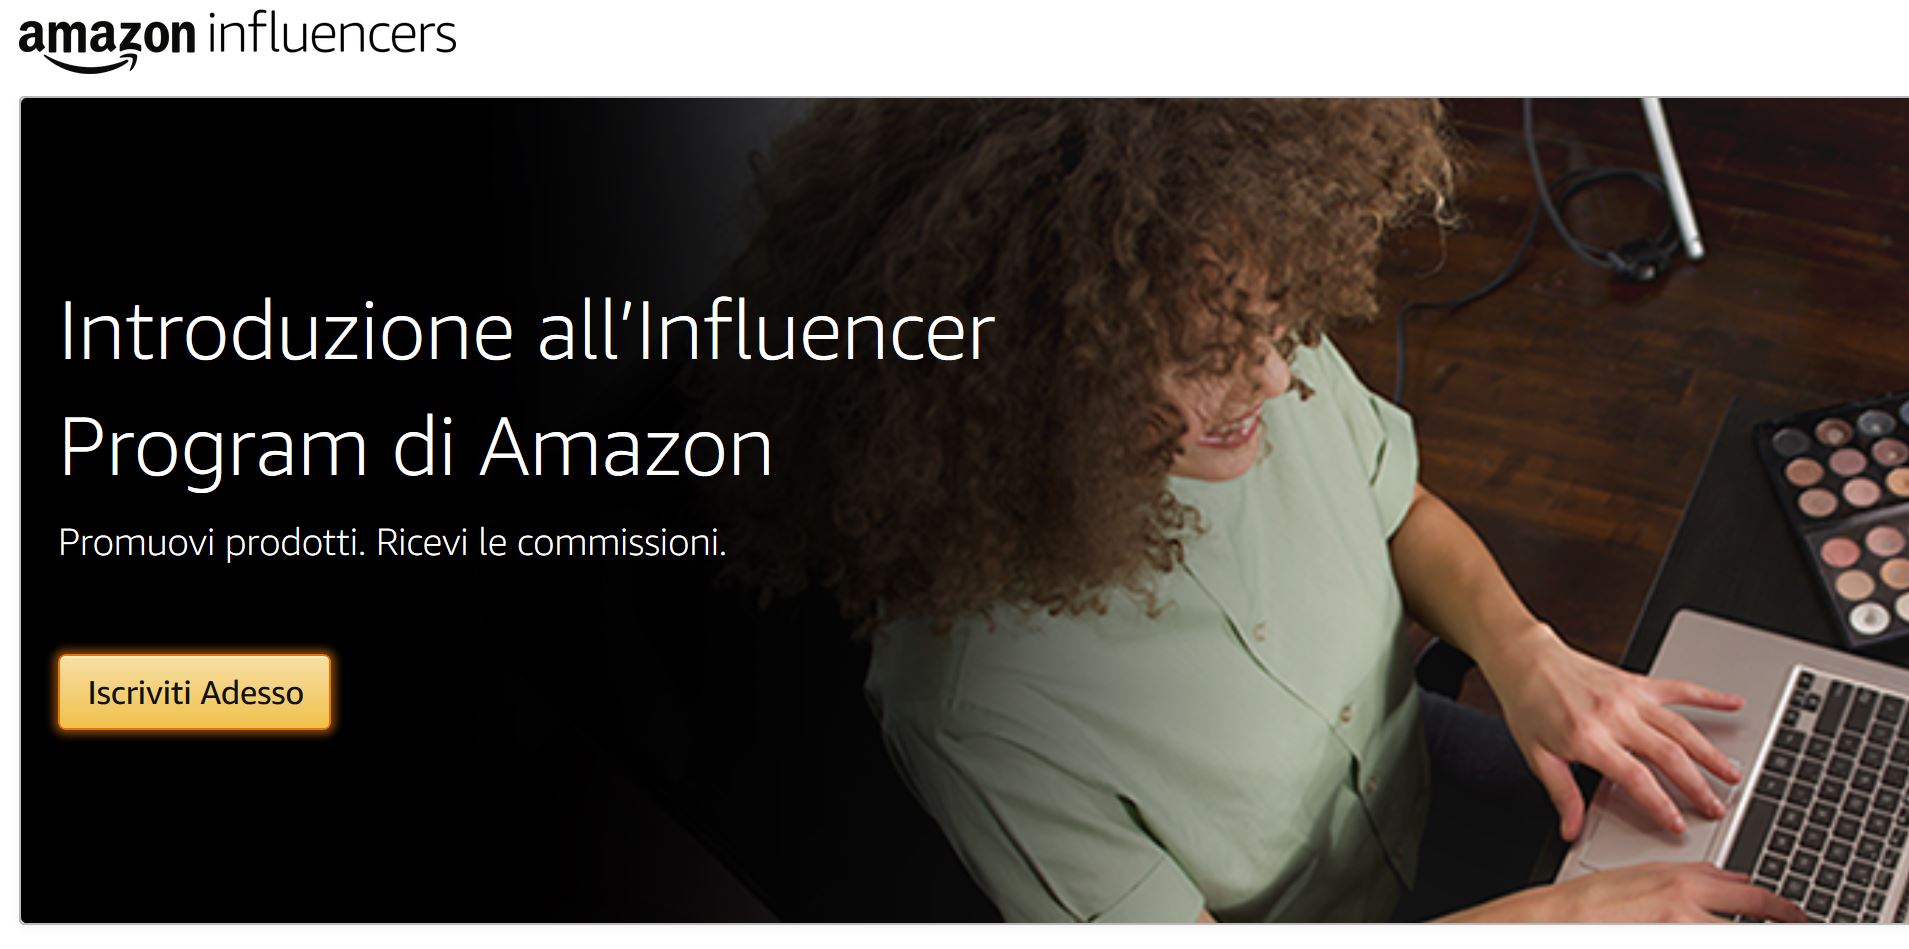 Come guadagnare diventando influencer di Amazon